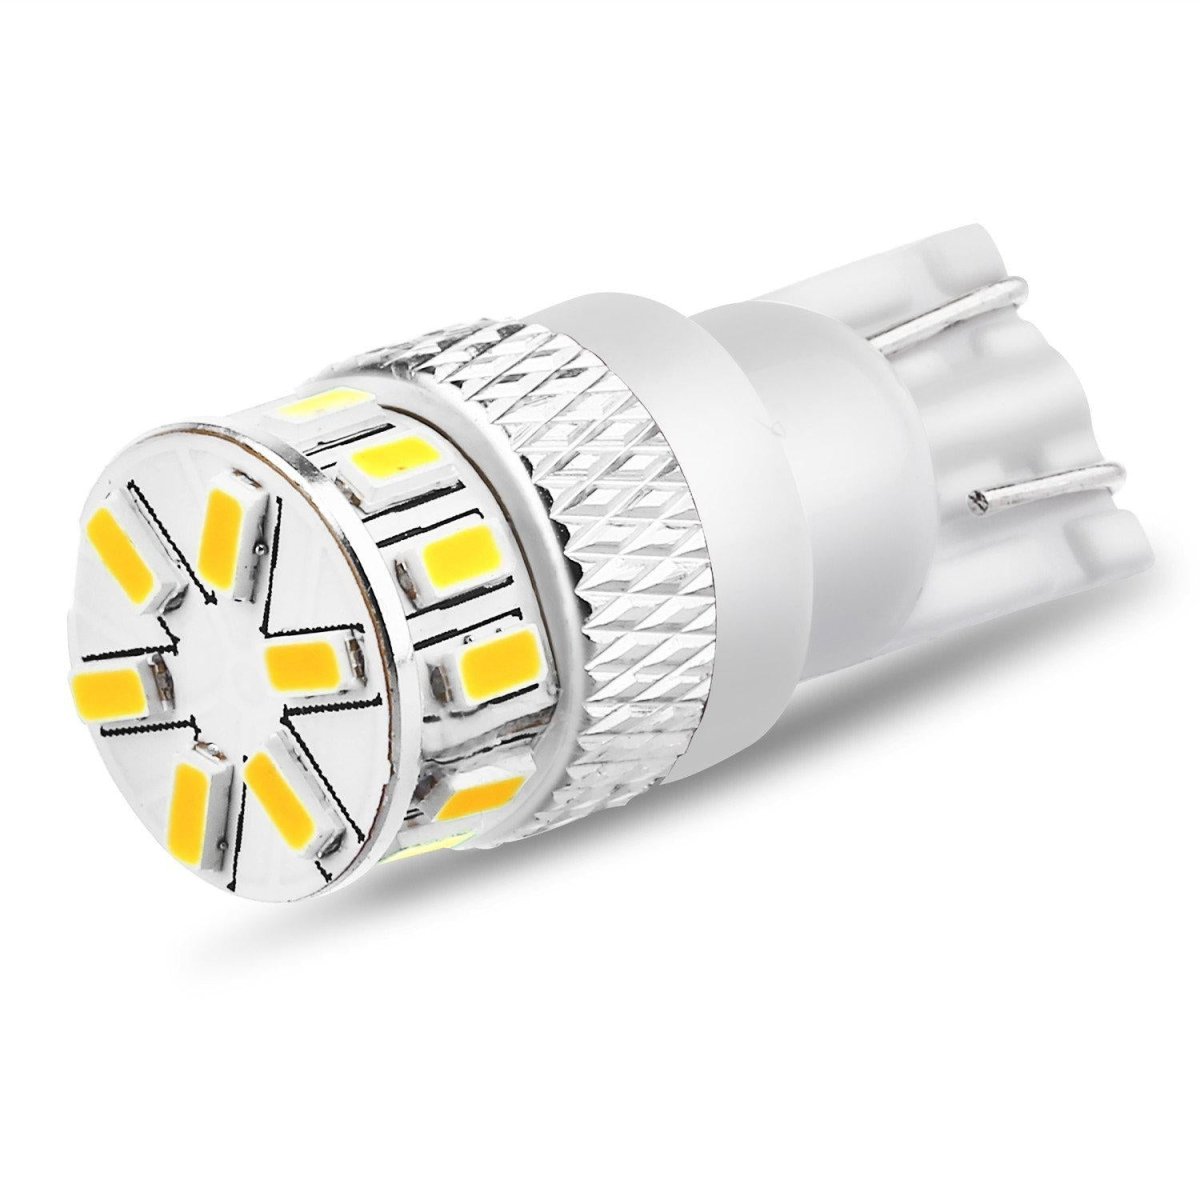 Boslla 194 T10 W5W LED Bulb